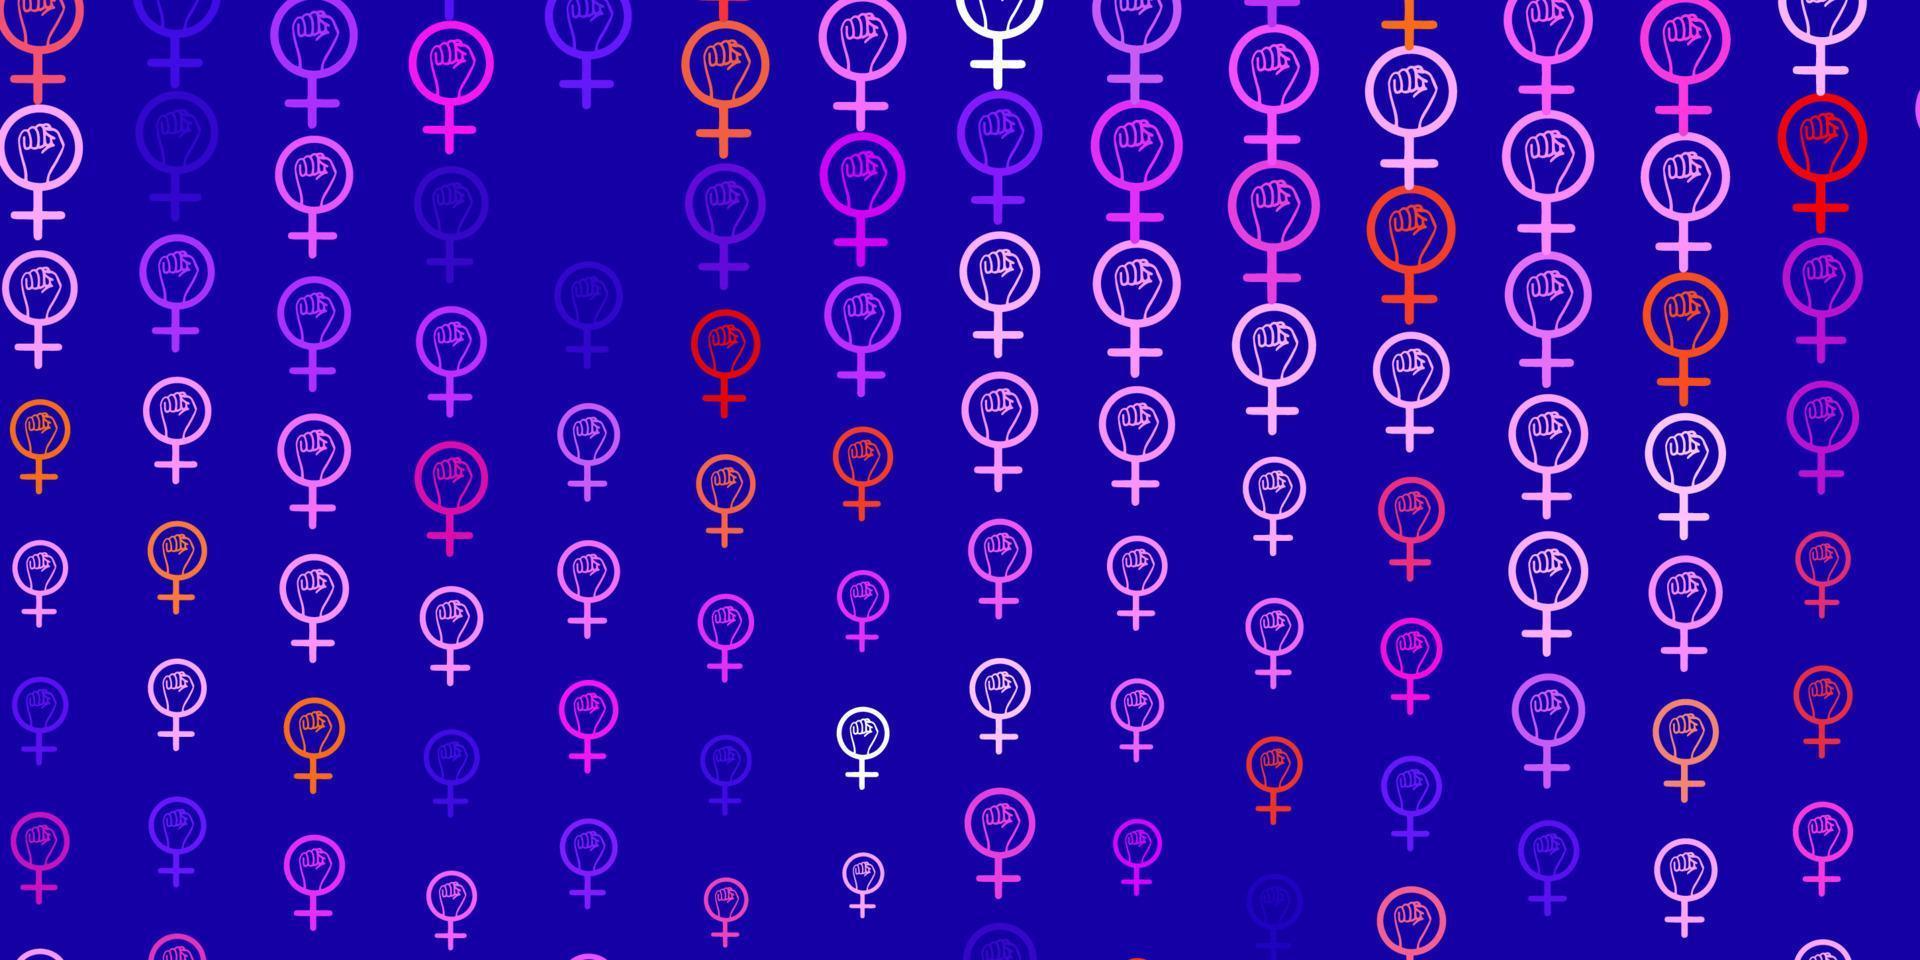 patrón de vector azul claro, rojo con elementos de feminismo.